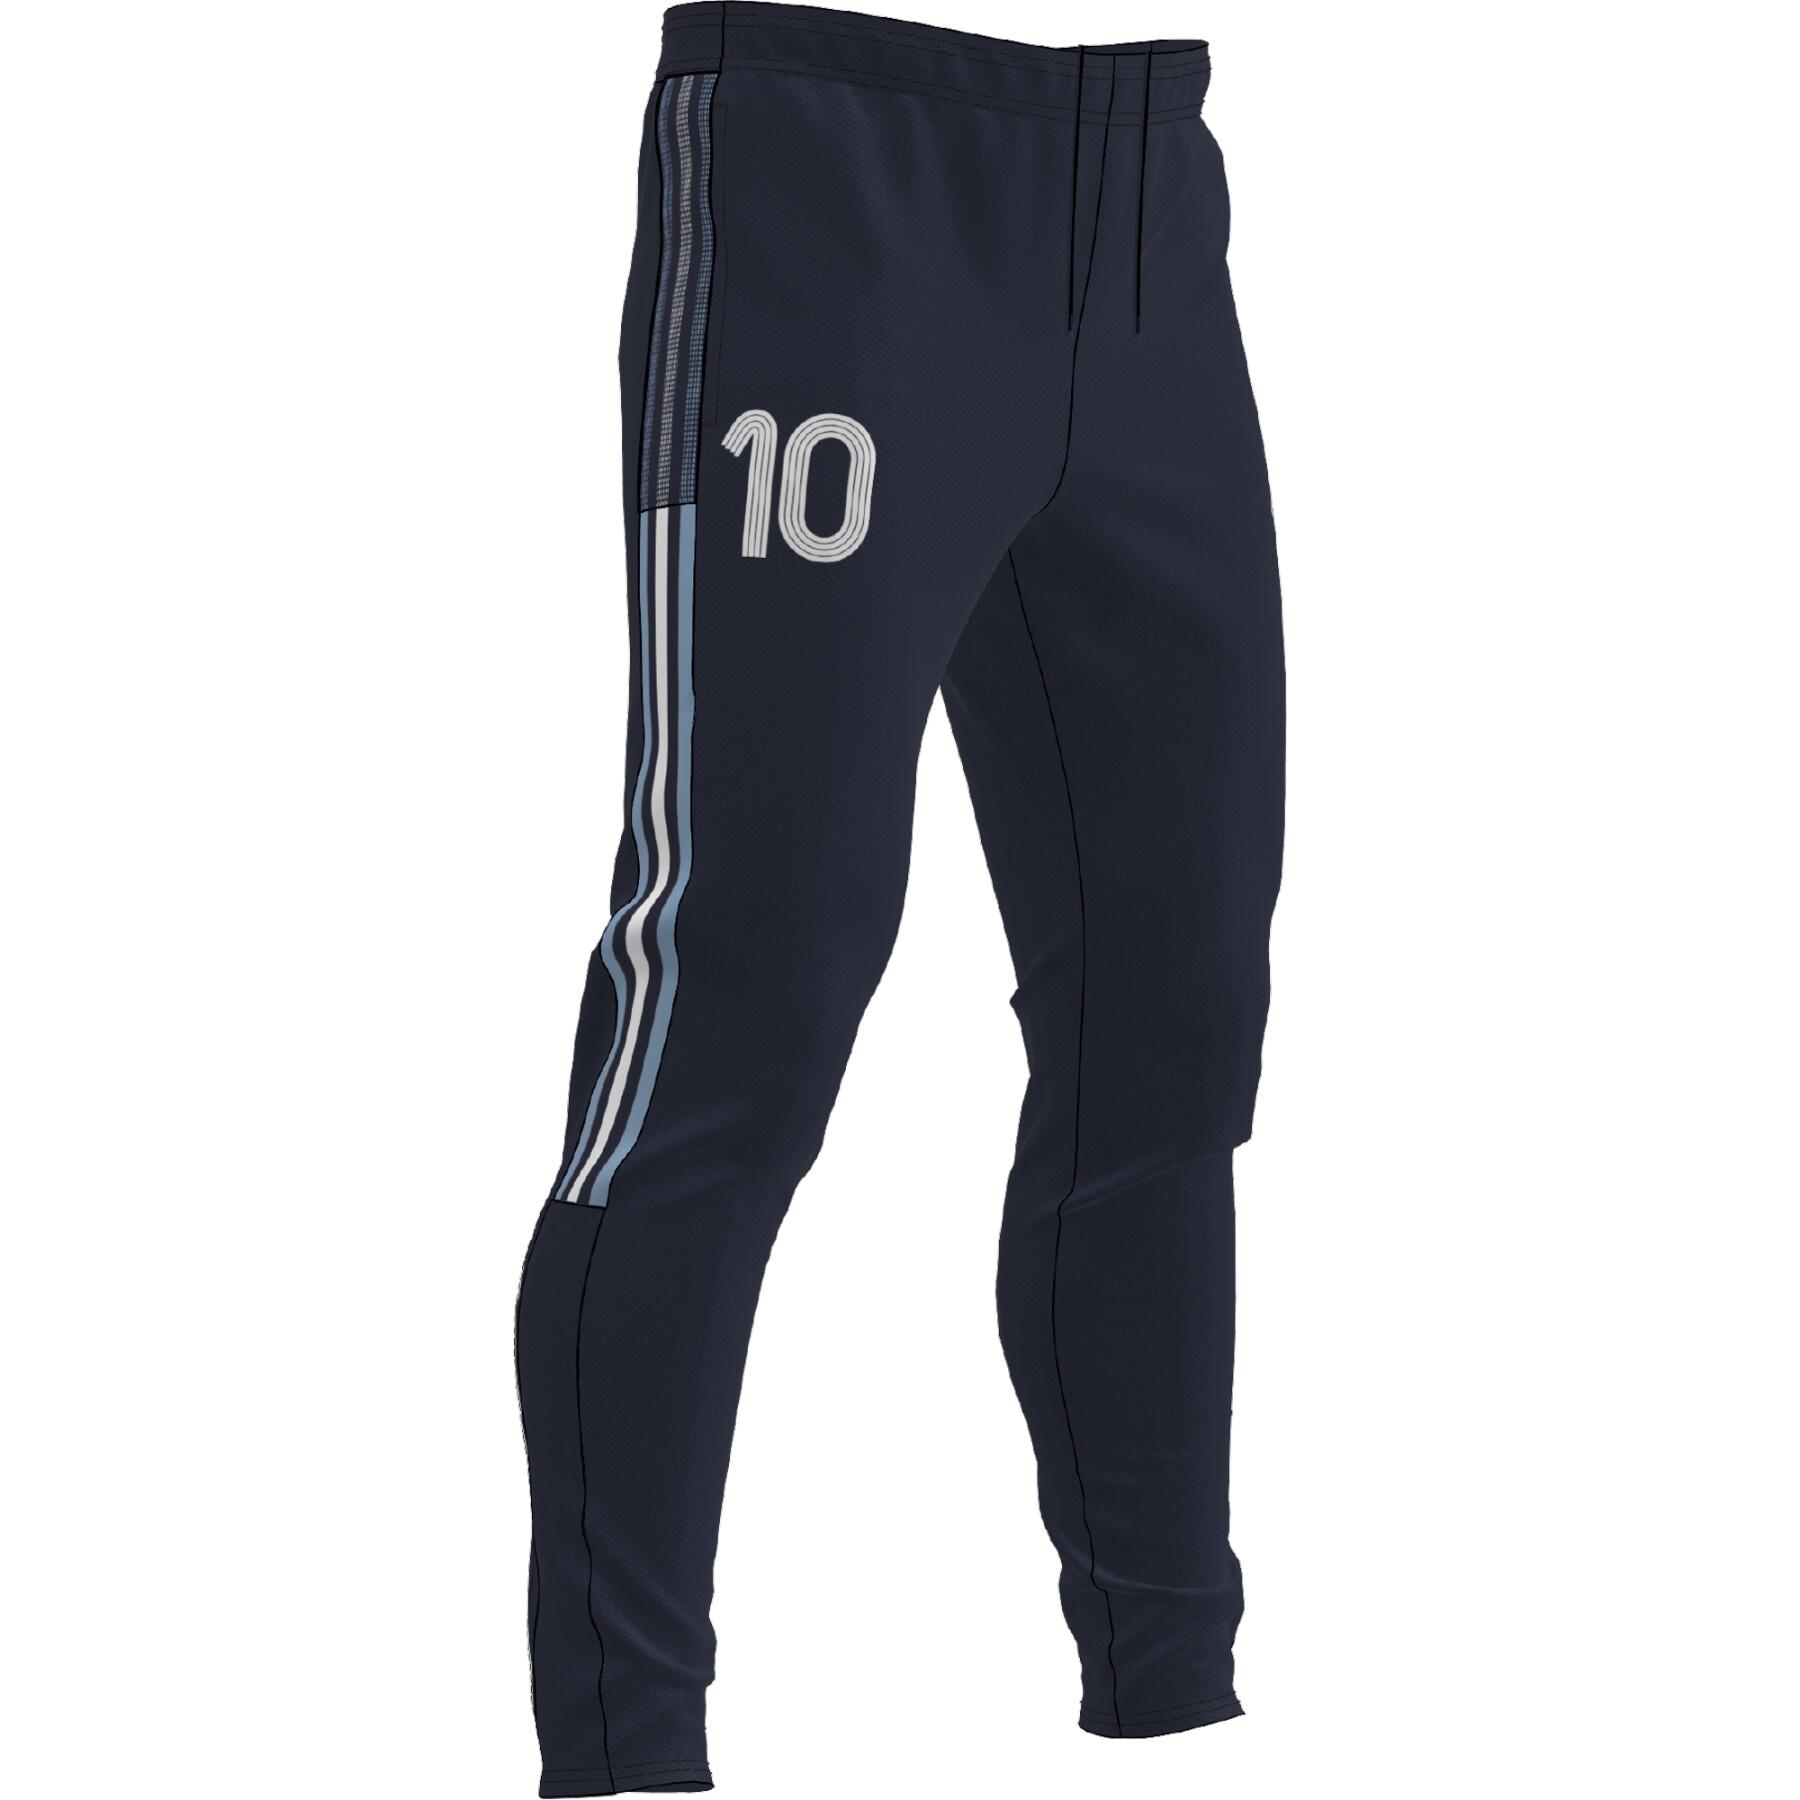 Children's jogging suit adidas Messi Tiro Number 10 Training